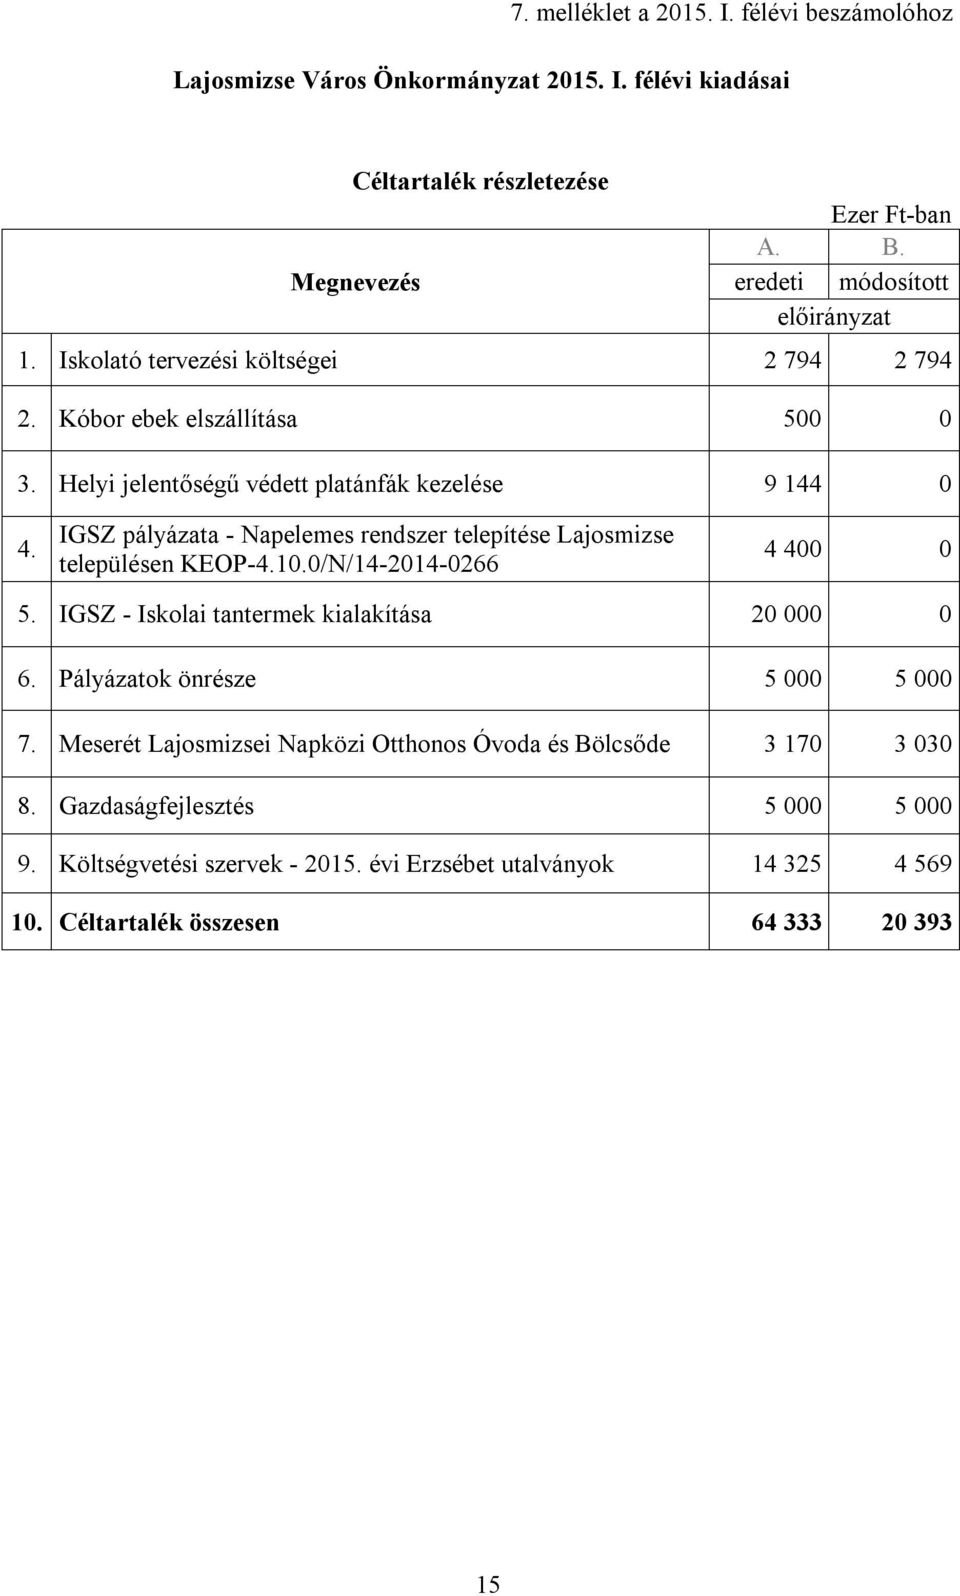 IGSZ pályázata - Napelemes rendszer telepítése Lajosmizse településen KEOP-4.10.0/N/14-2014-0266 4 400 0 5. IGSZ - Iskolai tantermek kialakítása 20 000 0 6.